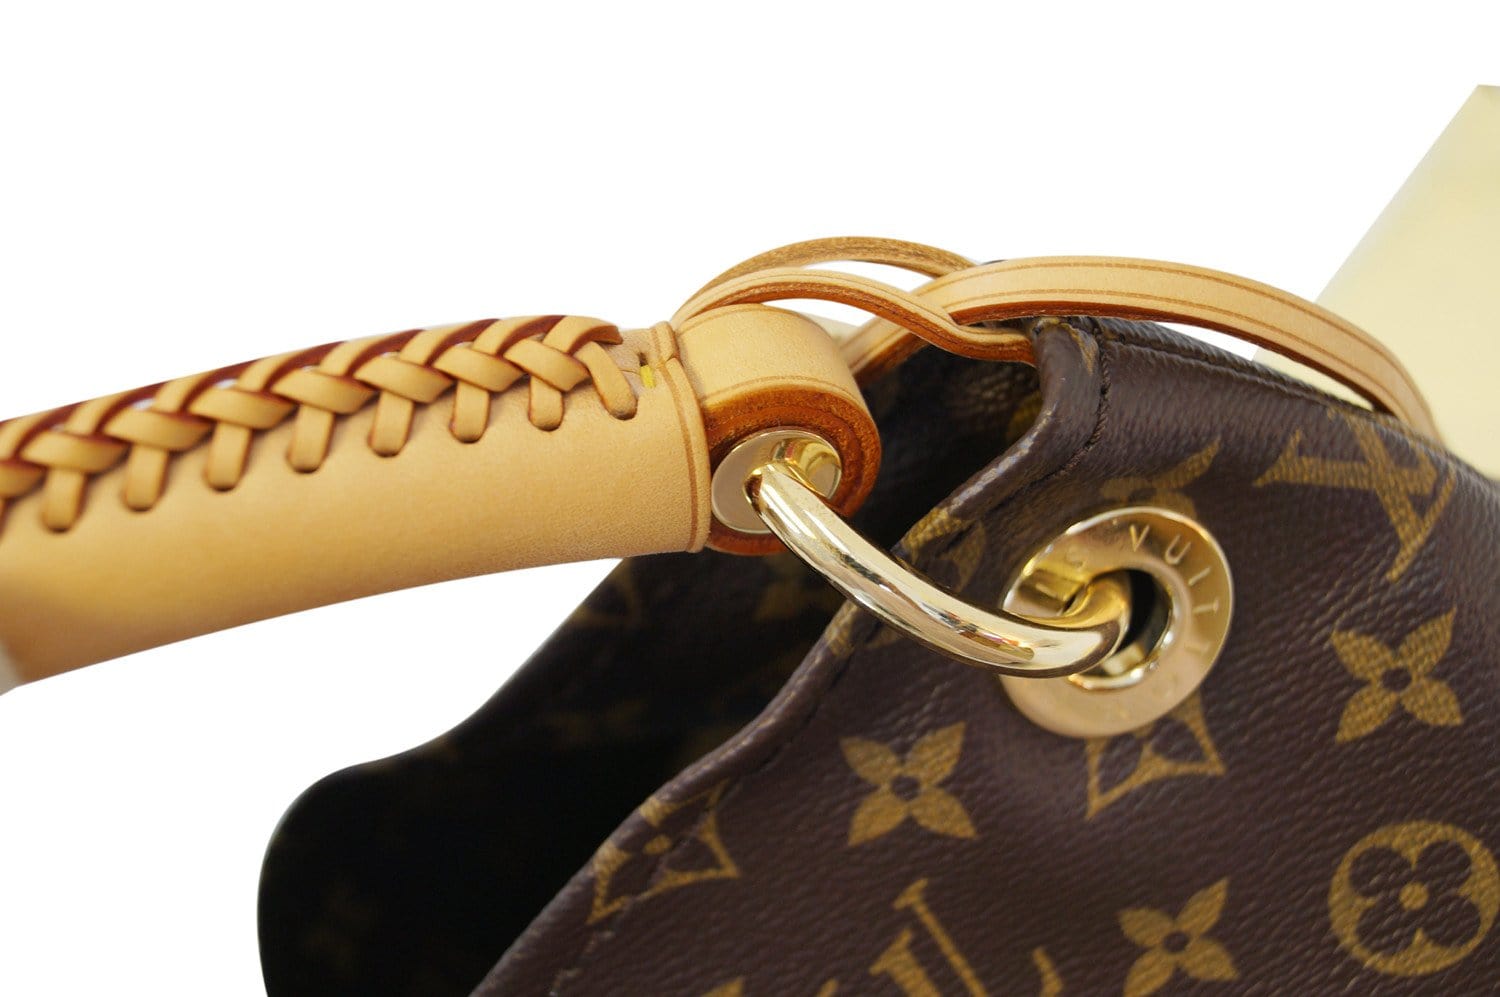 Louis Vuitton, Bags, Authentic Louis Vuitton Artsy Gm